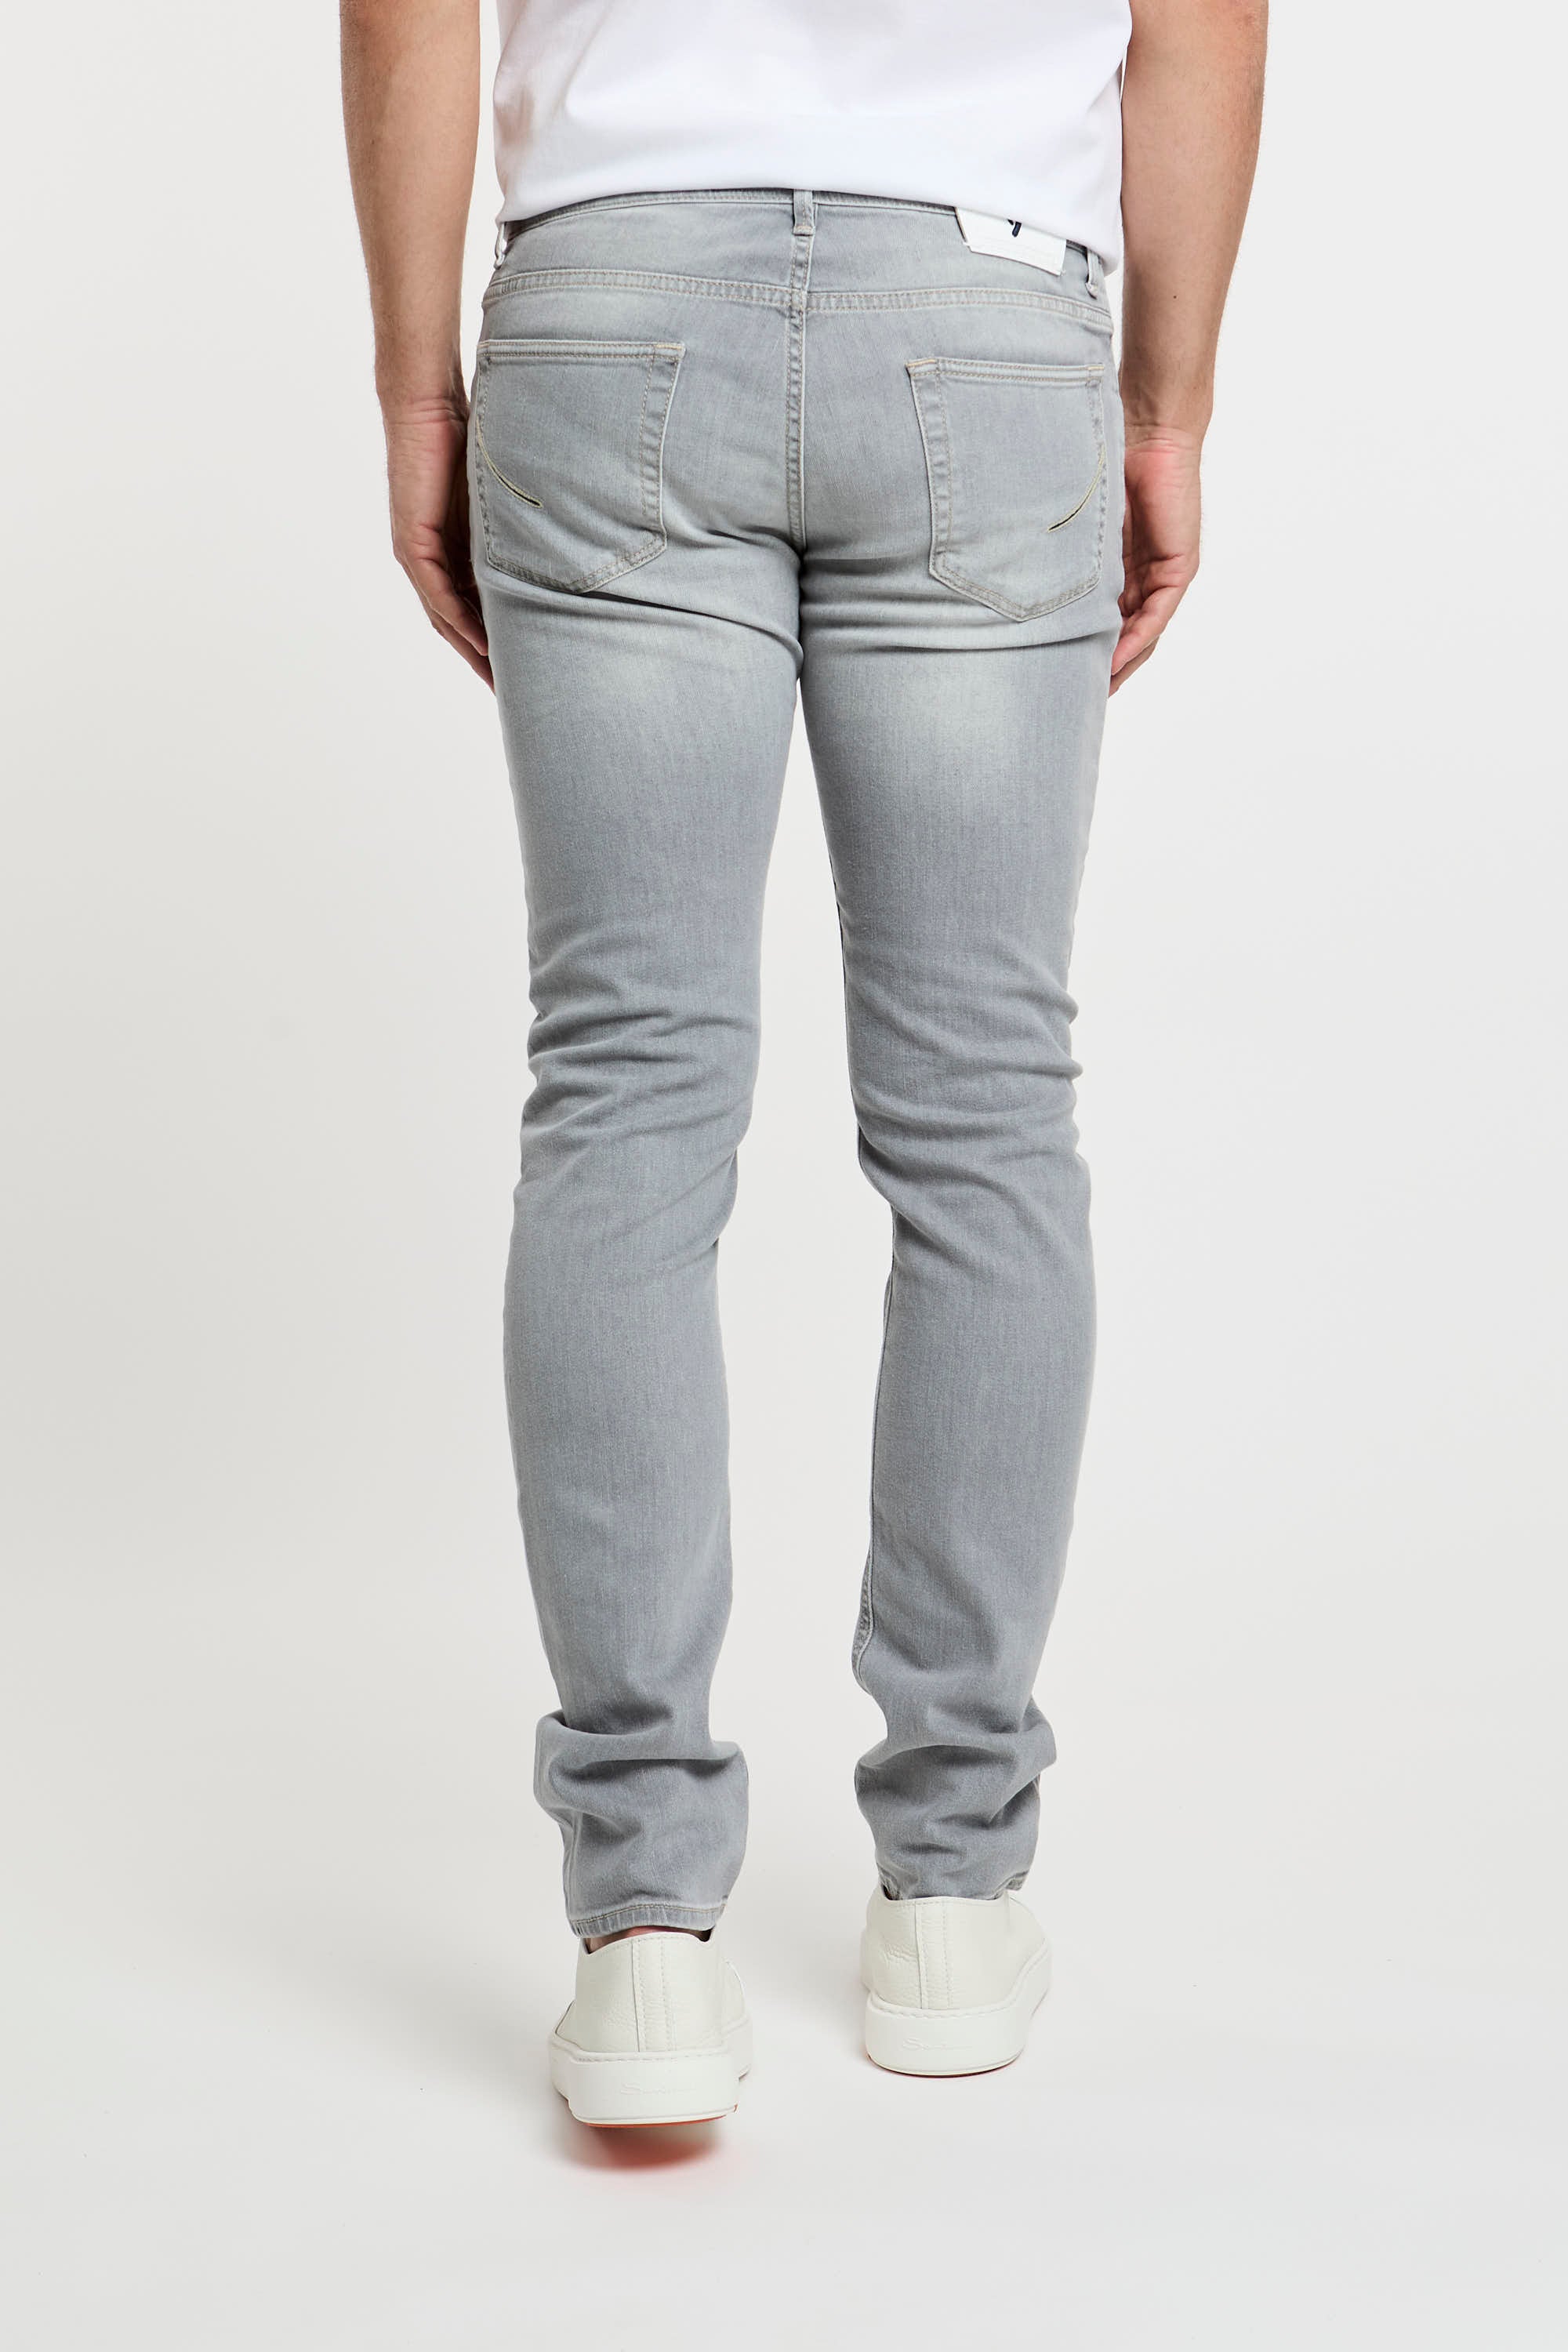 Ausgewählte Jeans Orvieto Baumwolle Grau-5